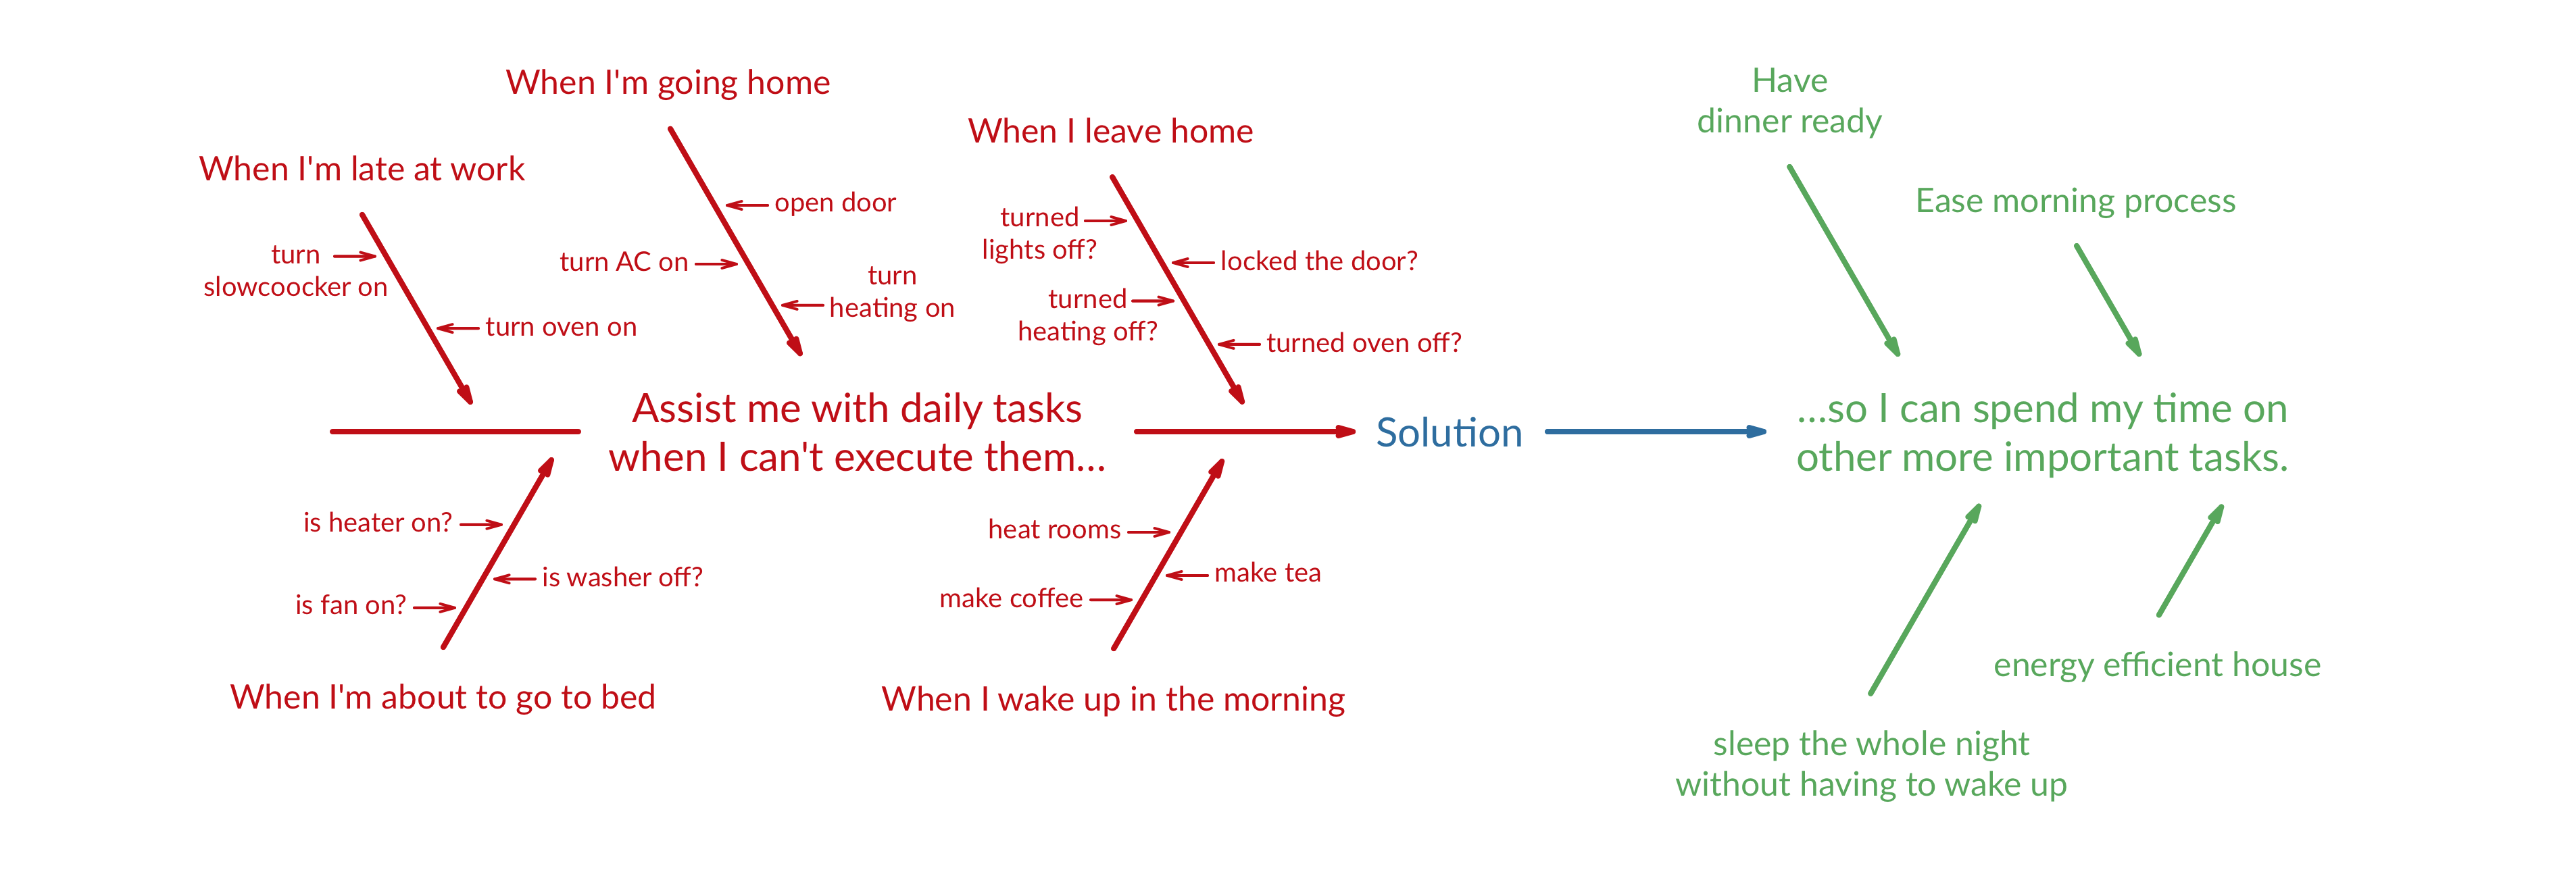 Job Story Diagram for yon